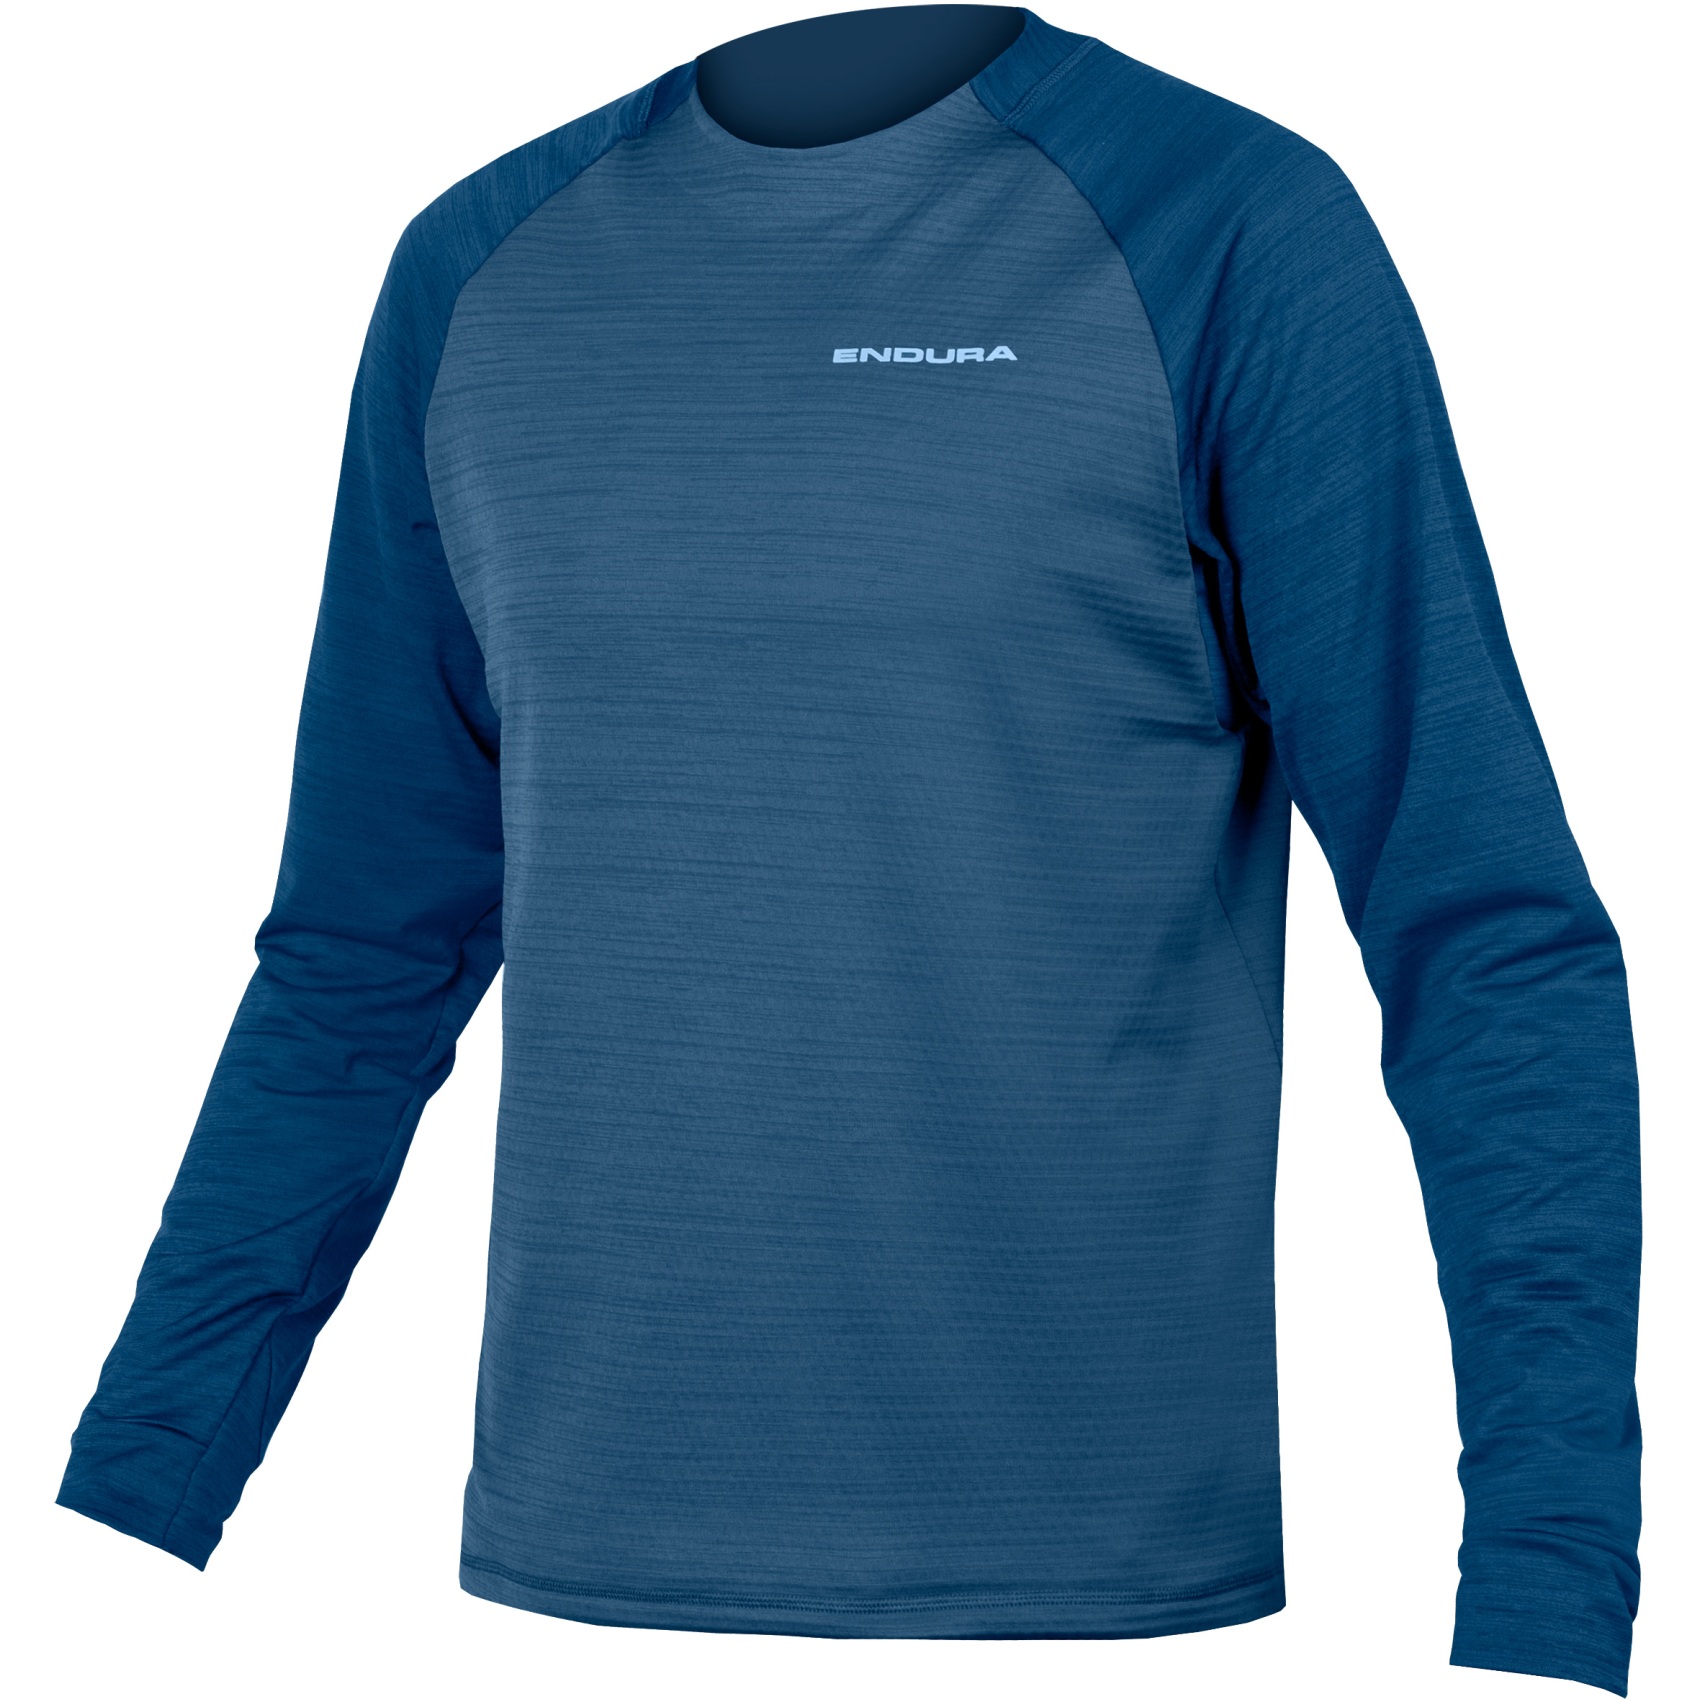 Productfoto van Endura SingleTrack Fleece Fietsshirt - ensign blue